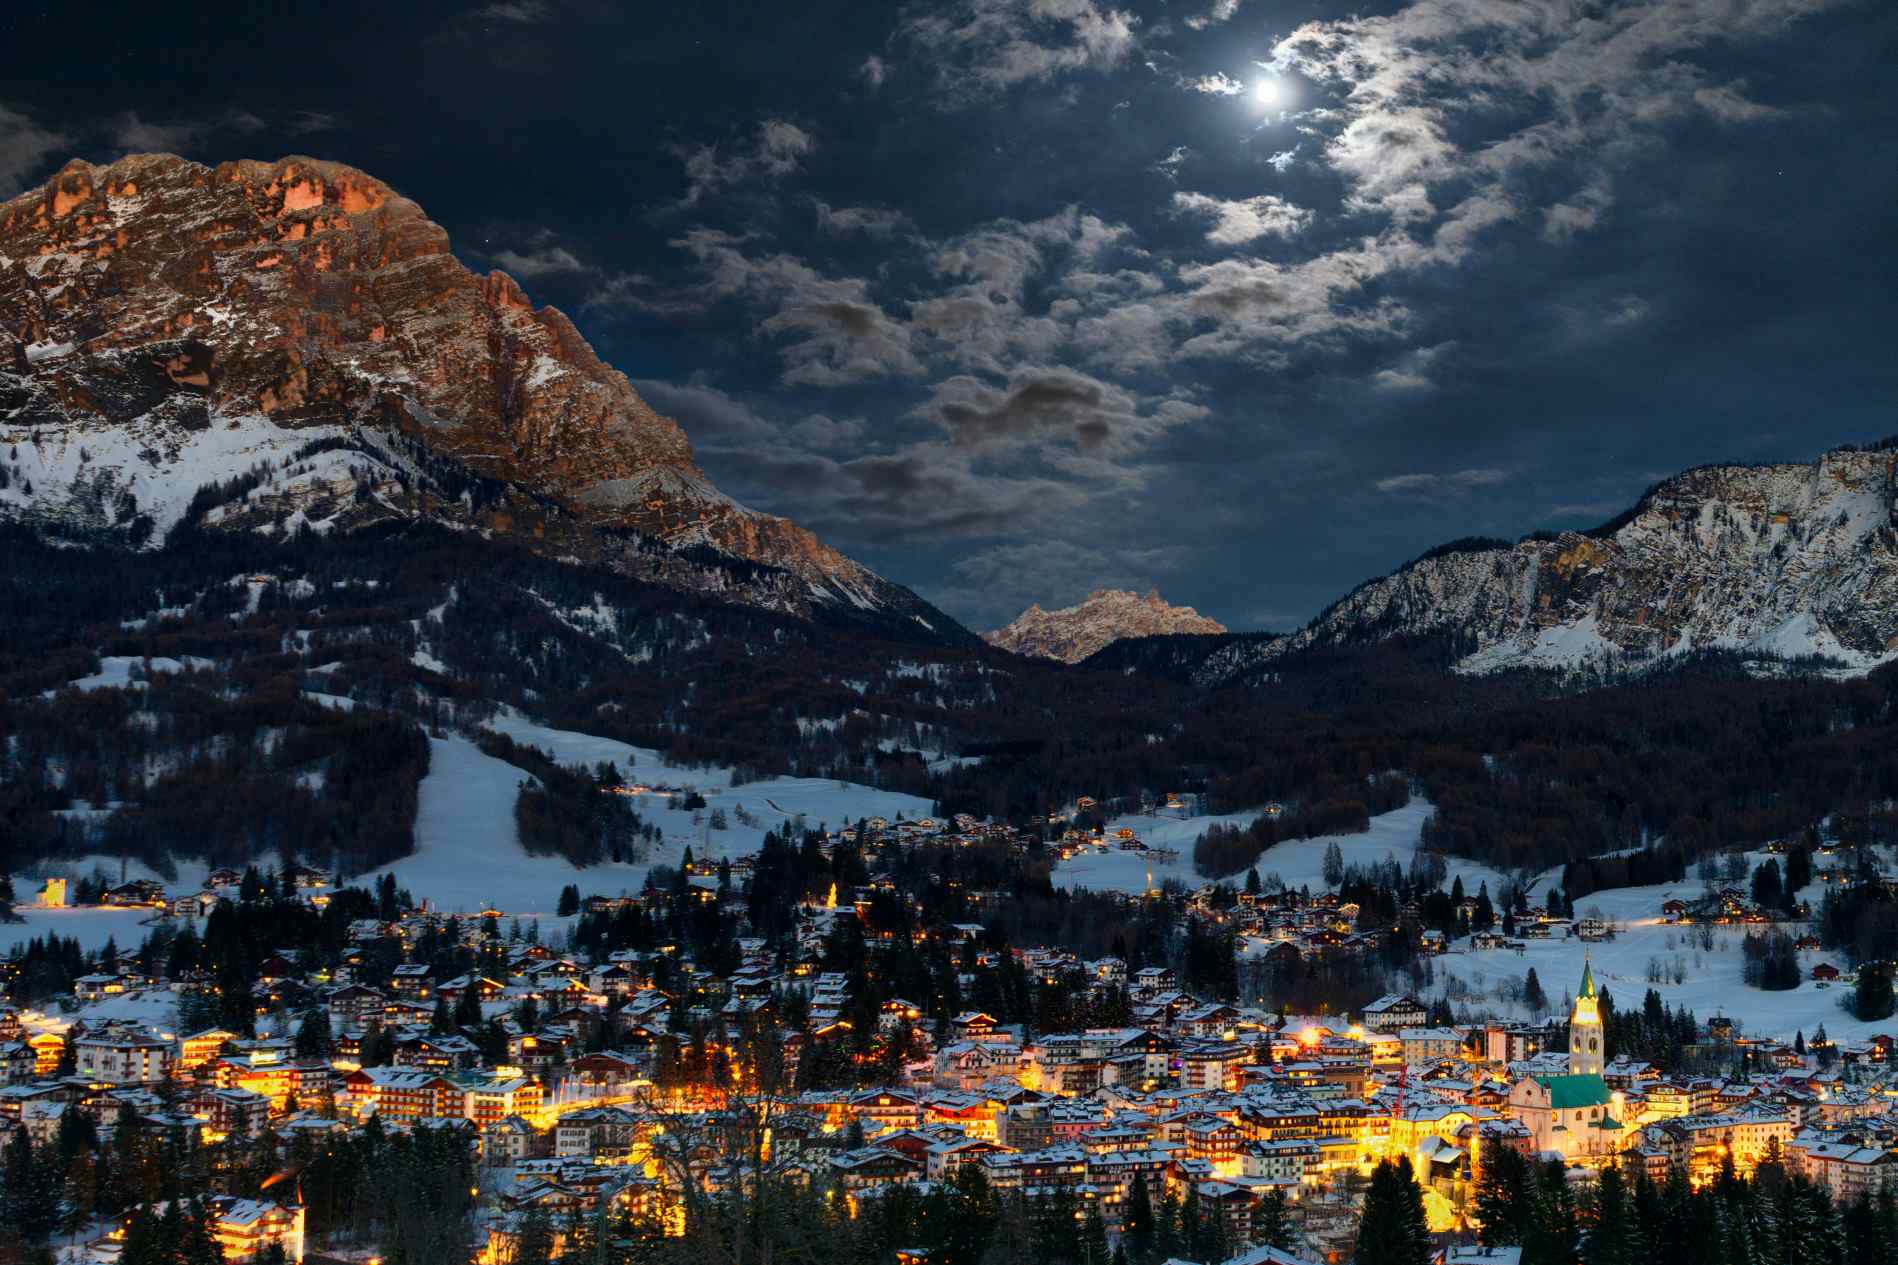 Cortina D'Ampezzo by night, Italy